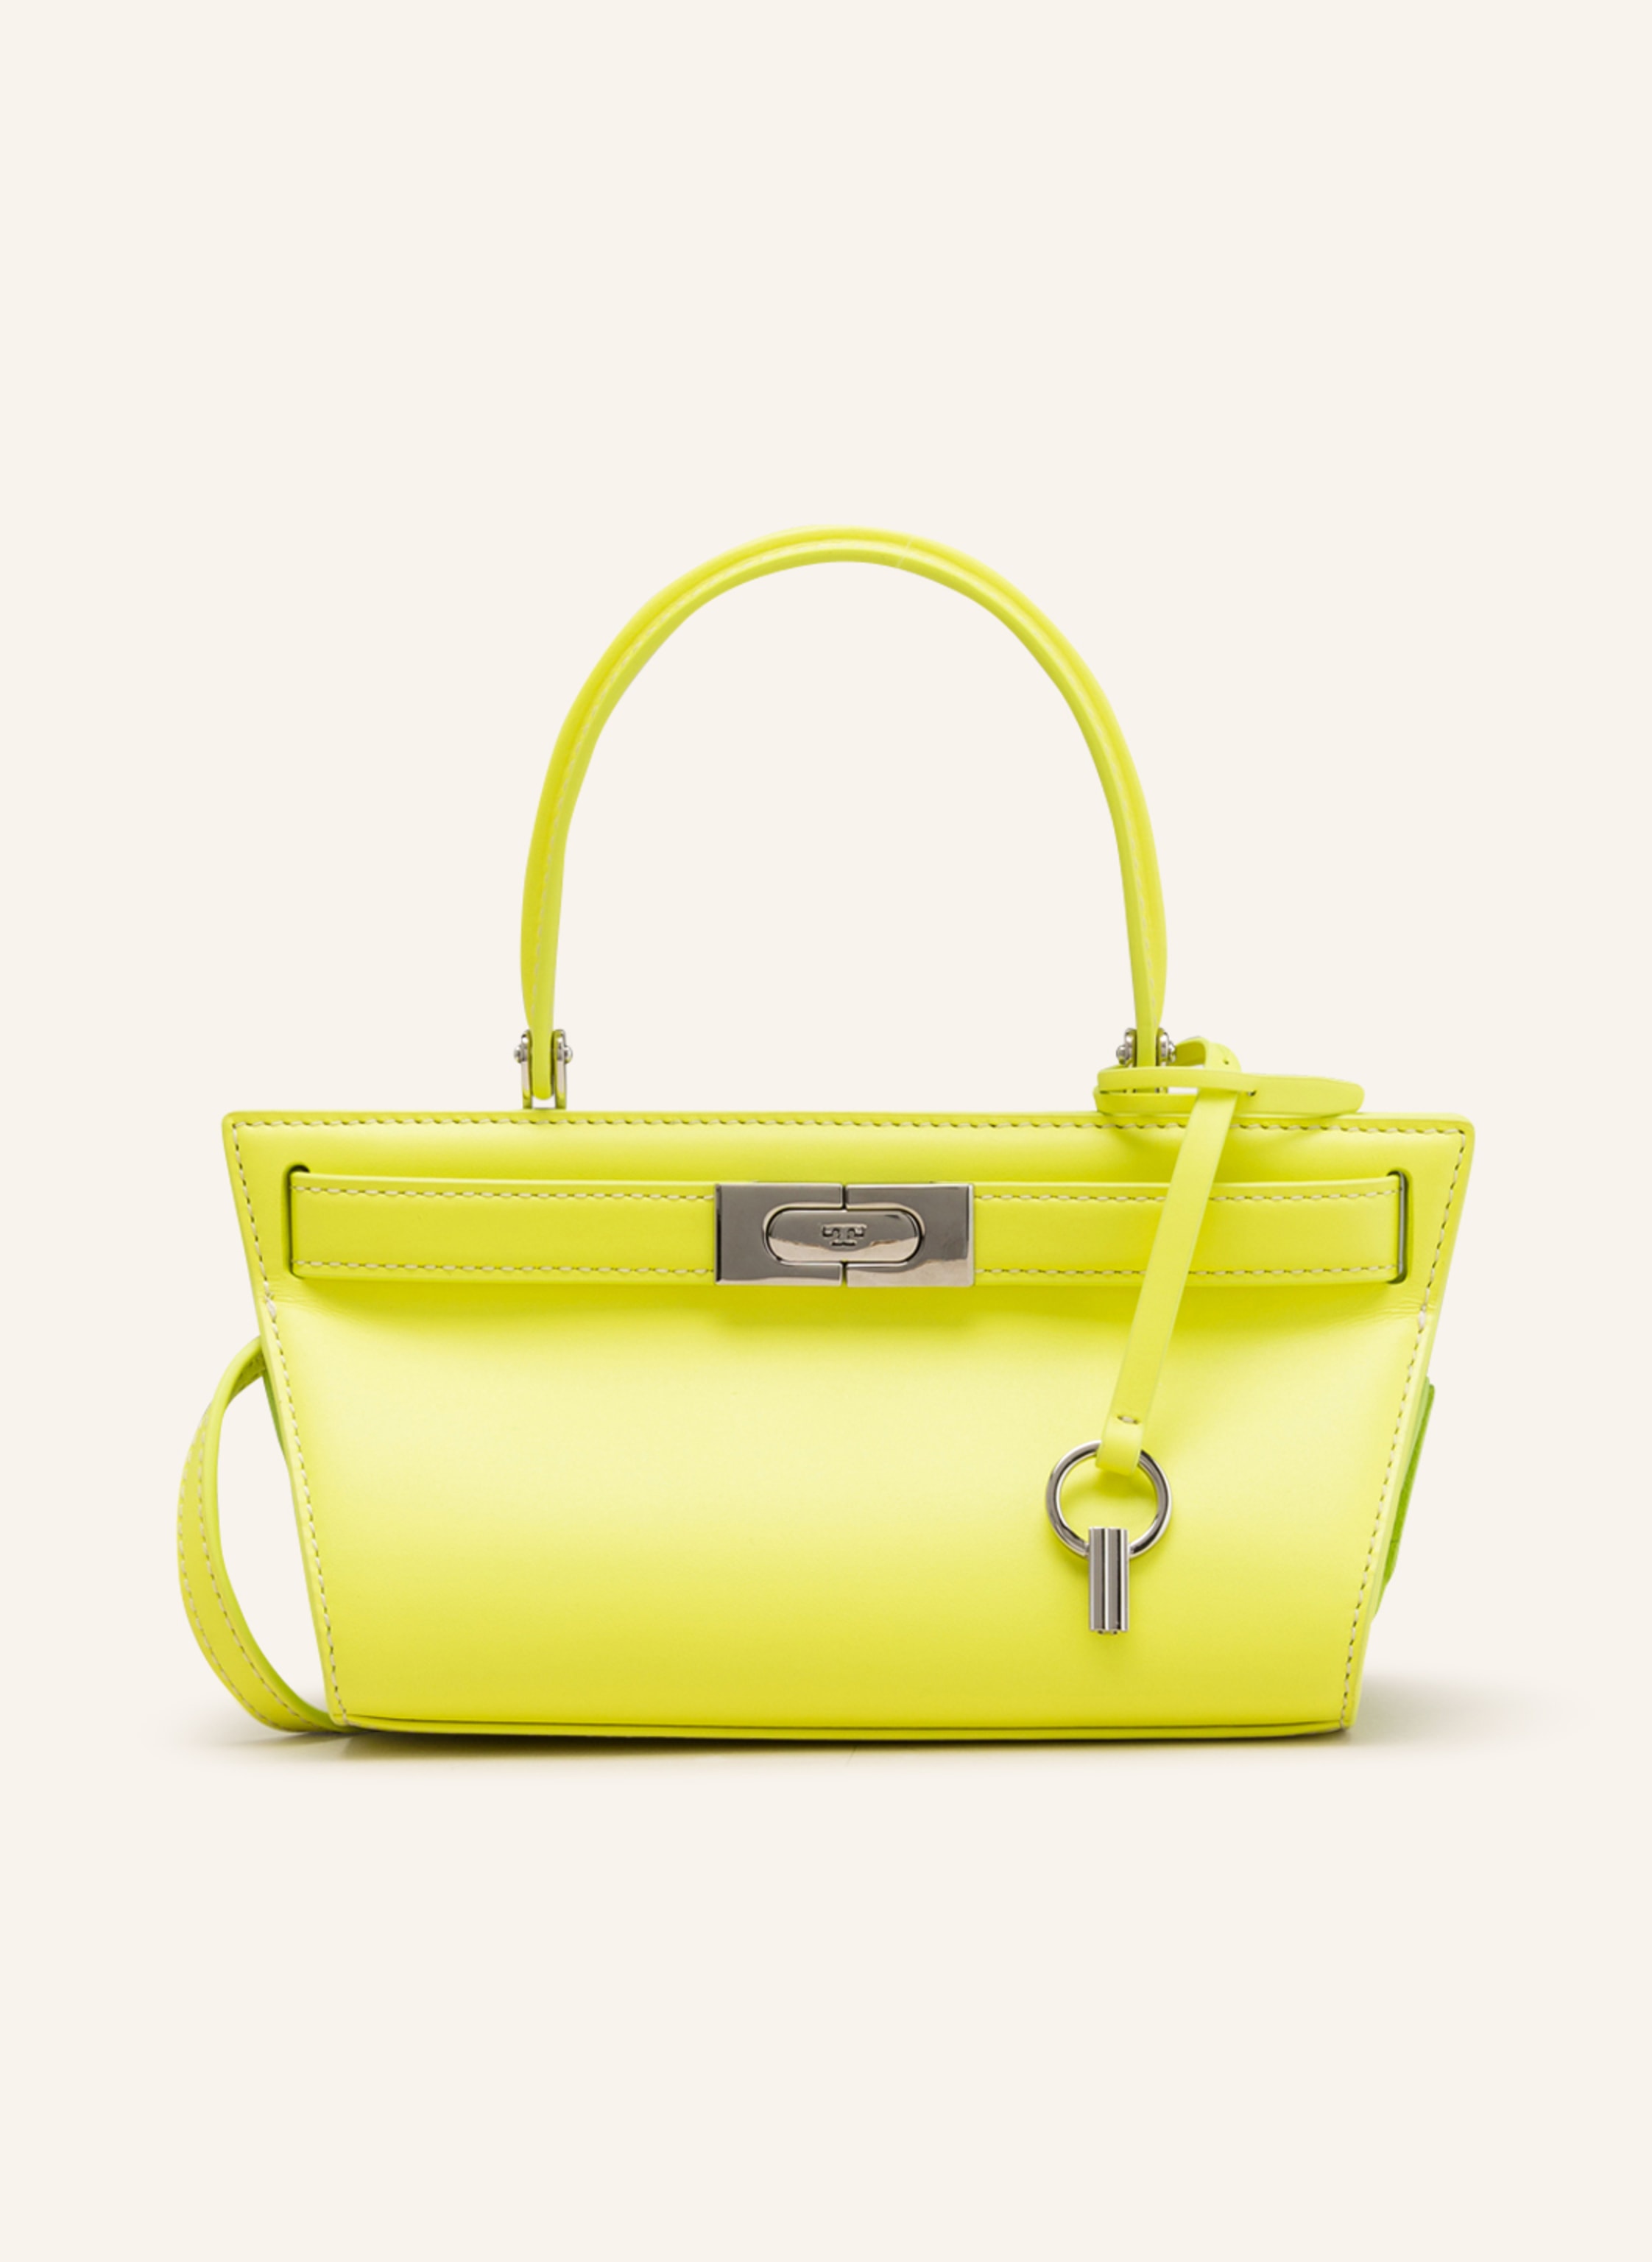 TORY BURCH Handbag PETITE LEE RADZIWILL in yellow | Breuninger